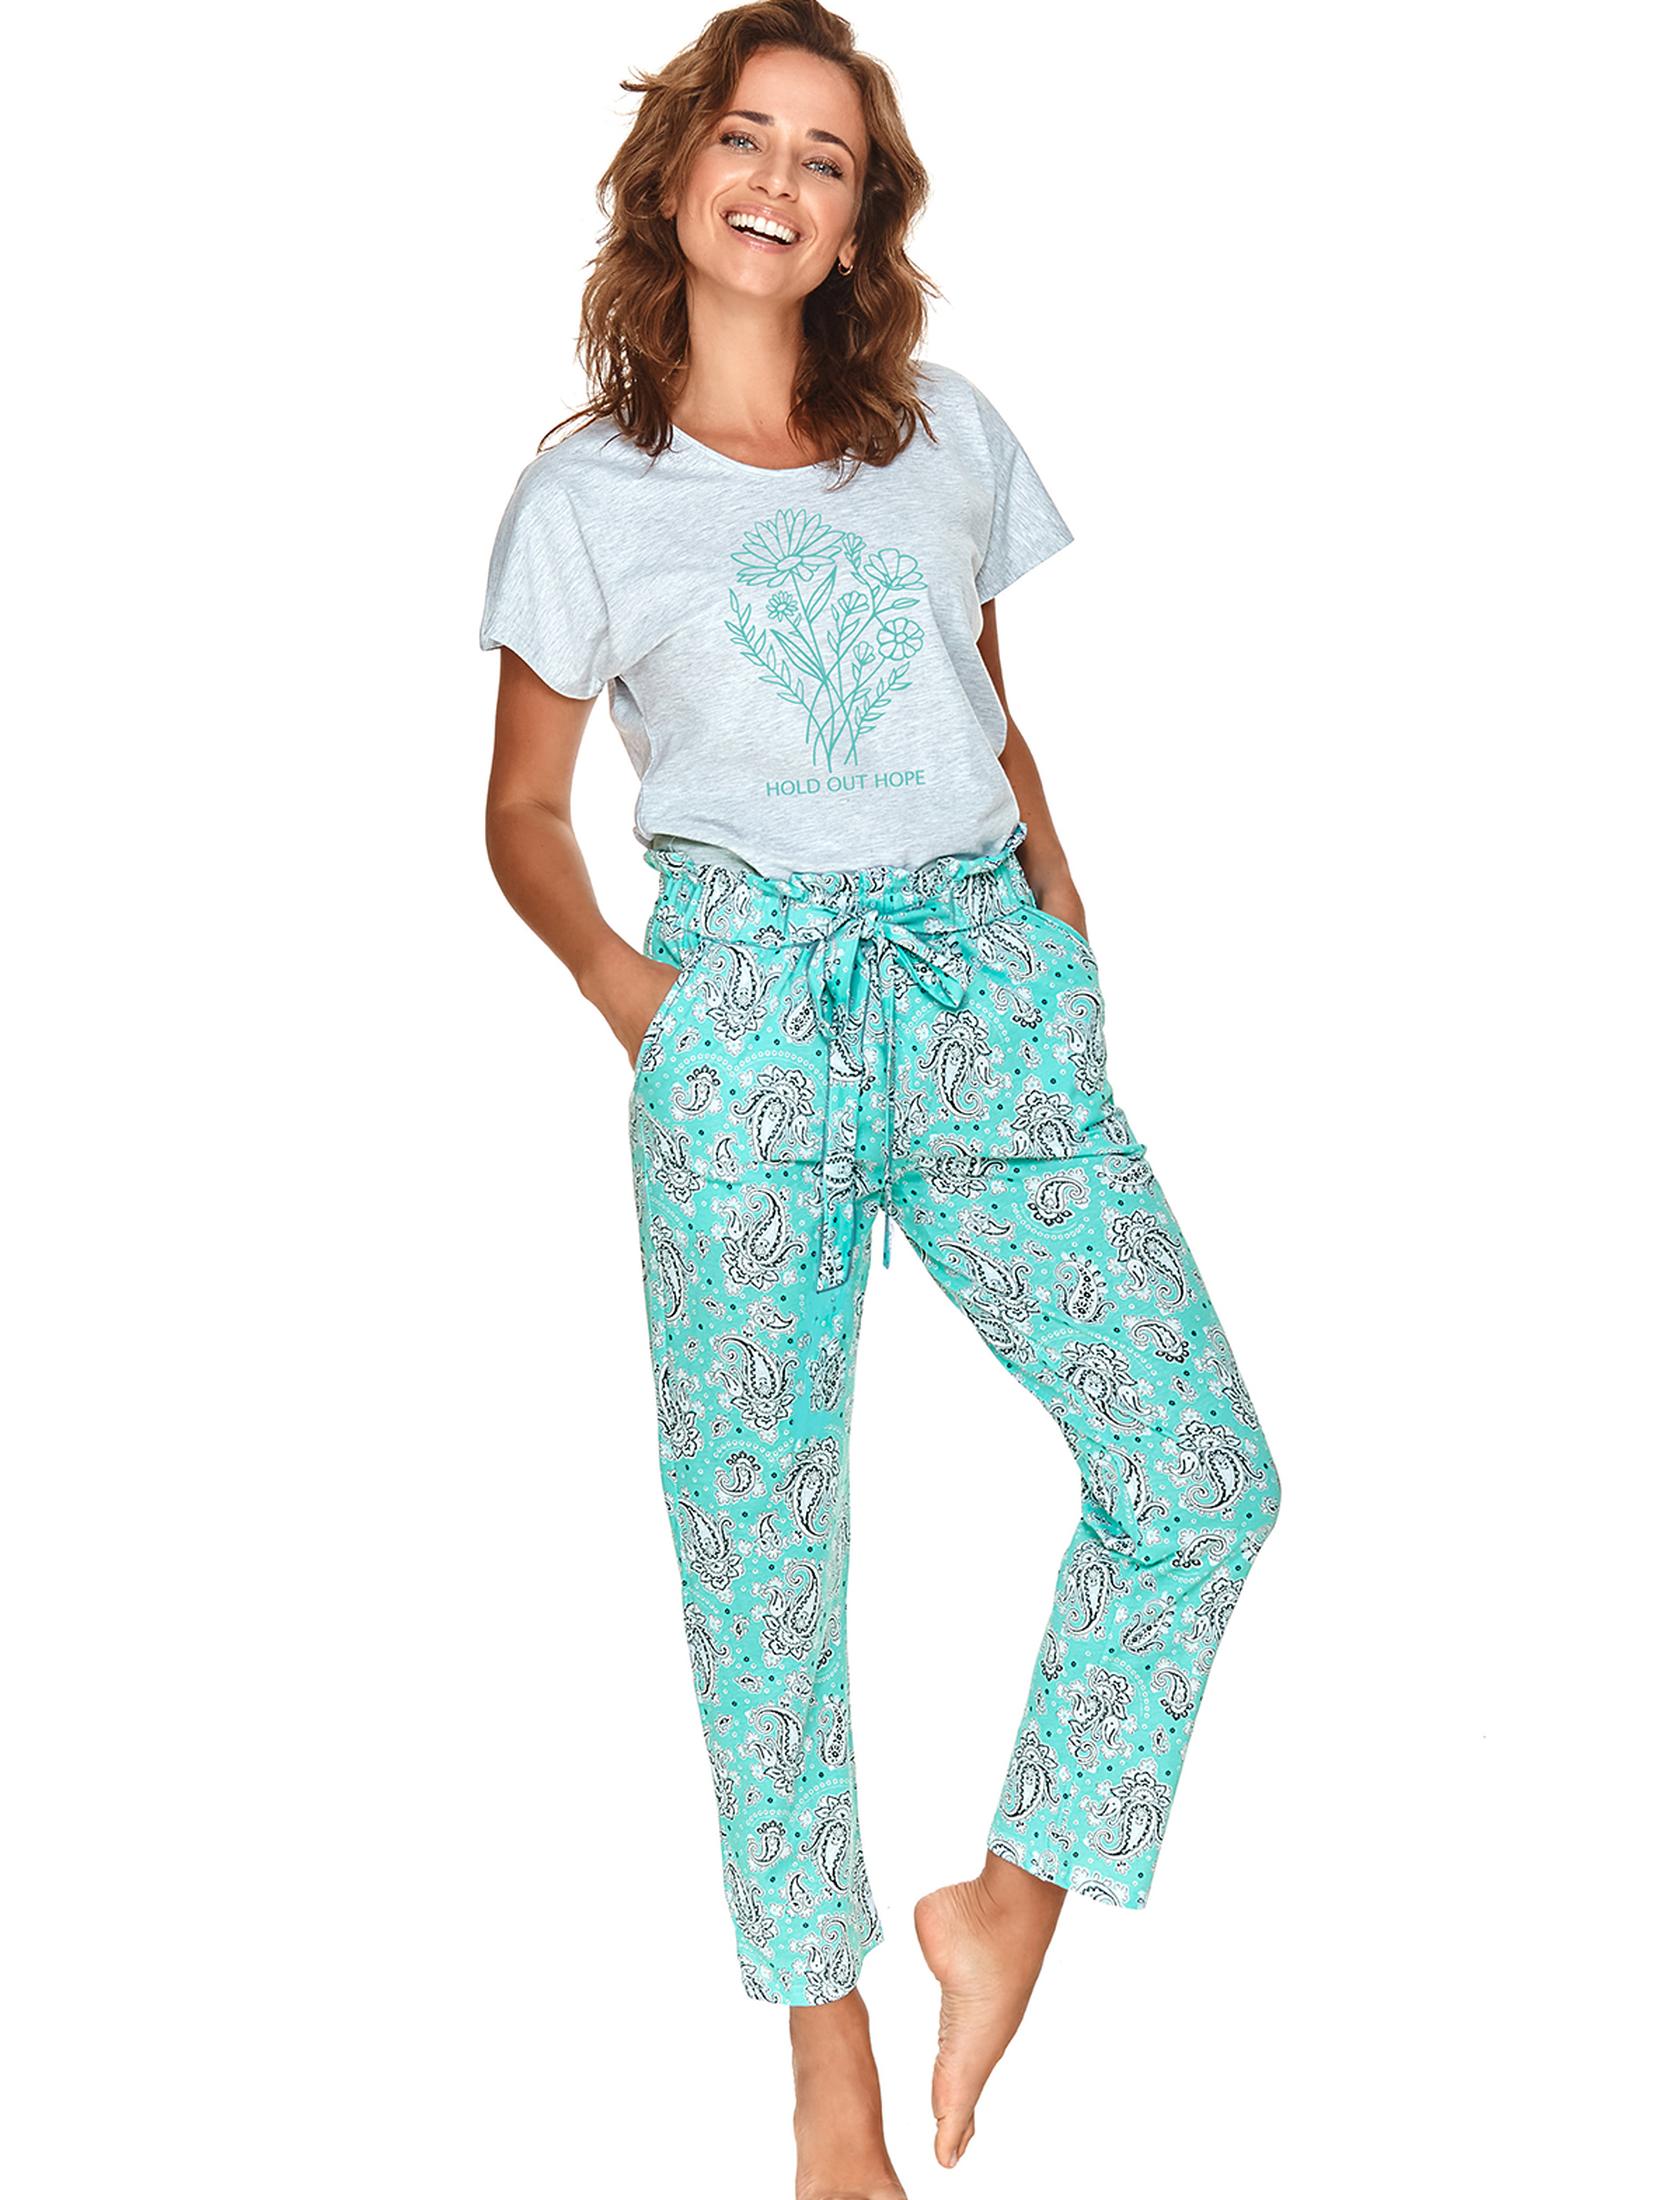 Dwuczęściowa piżama - T-shirt z miękkim nadrukiem i długie spodnie we wzory